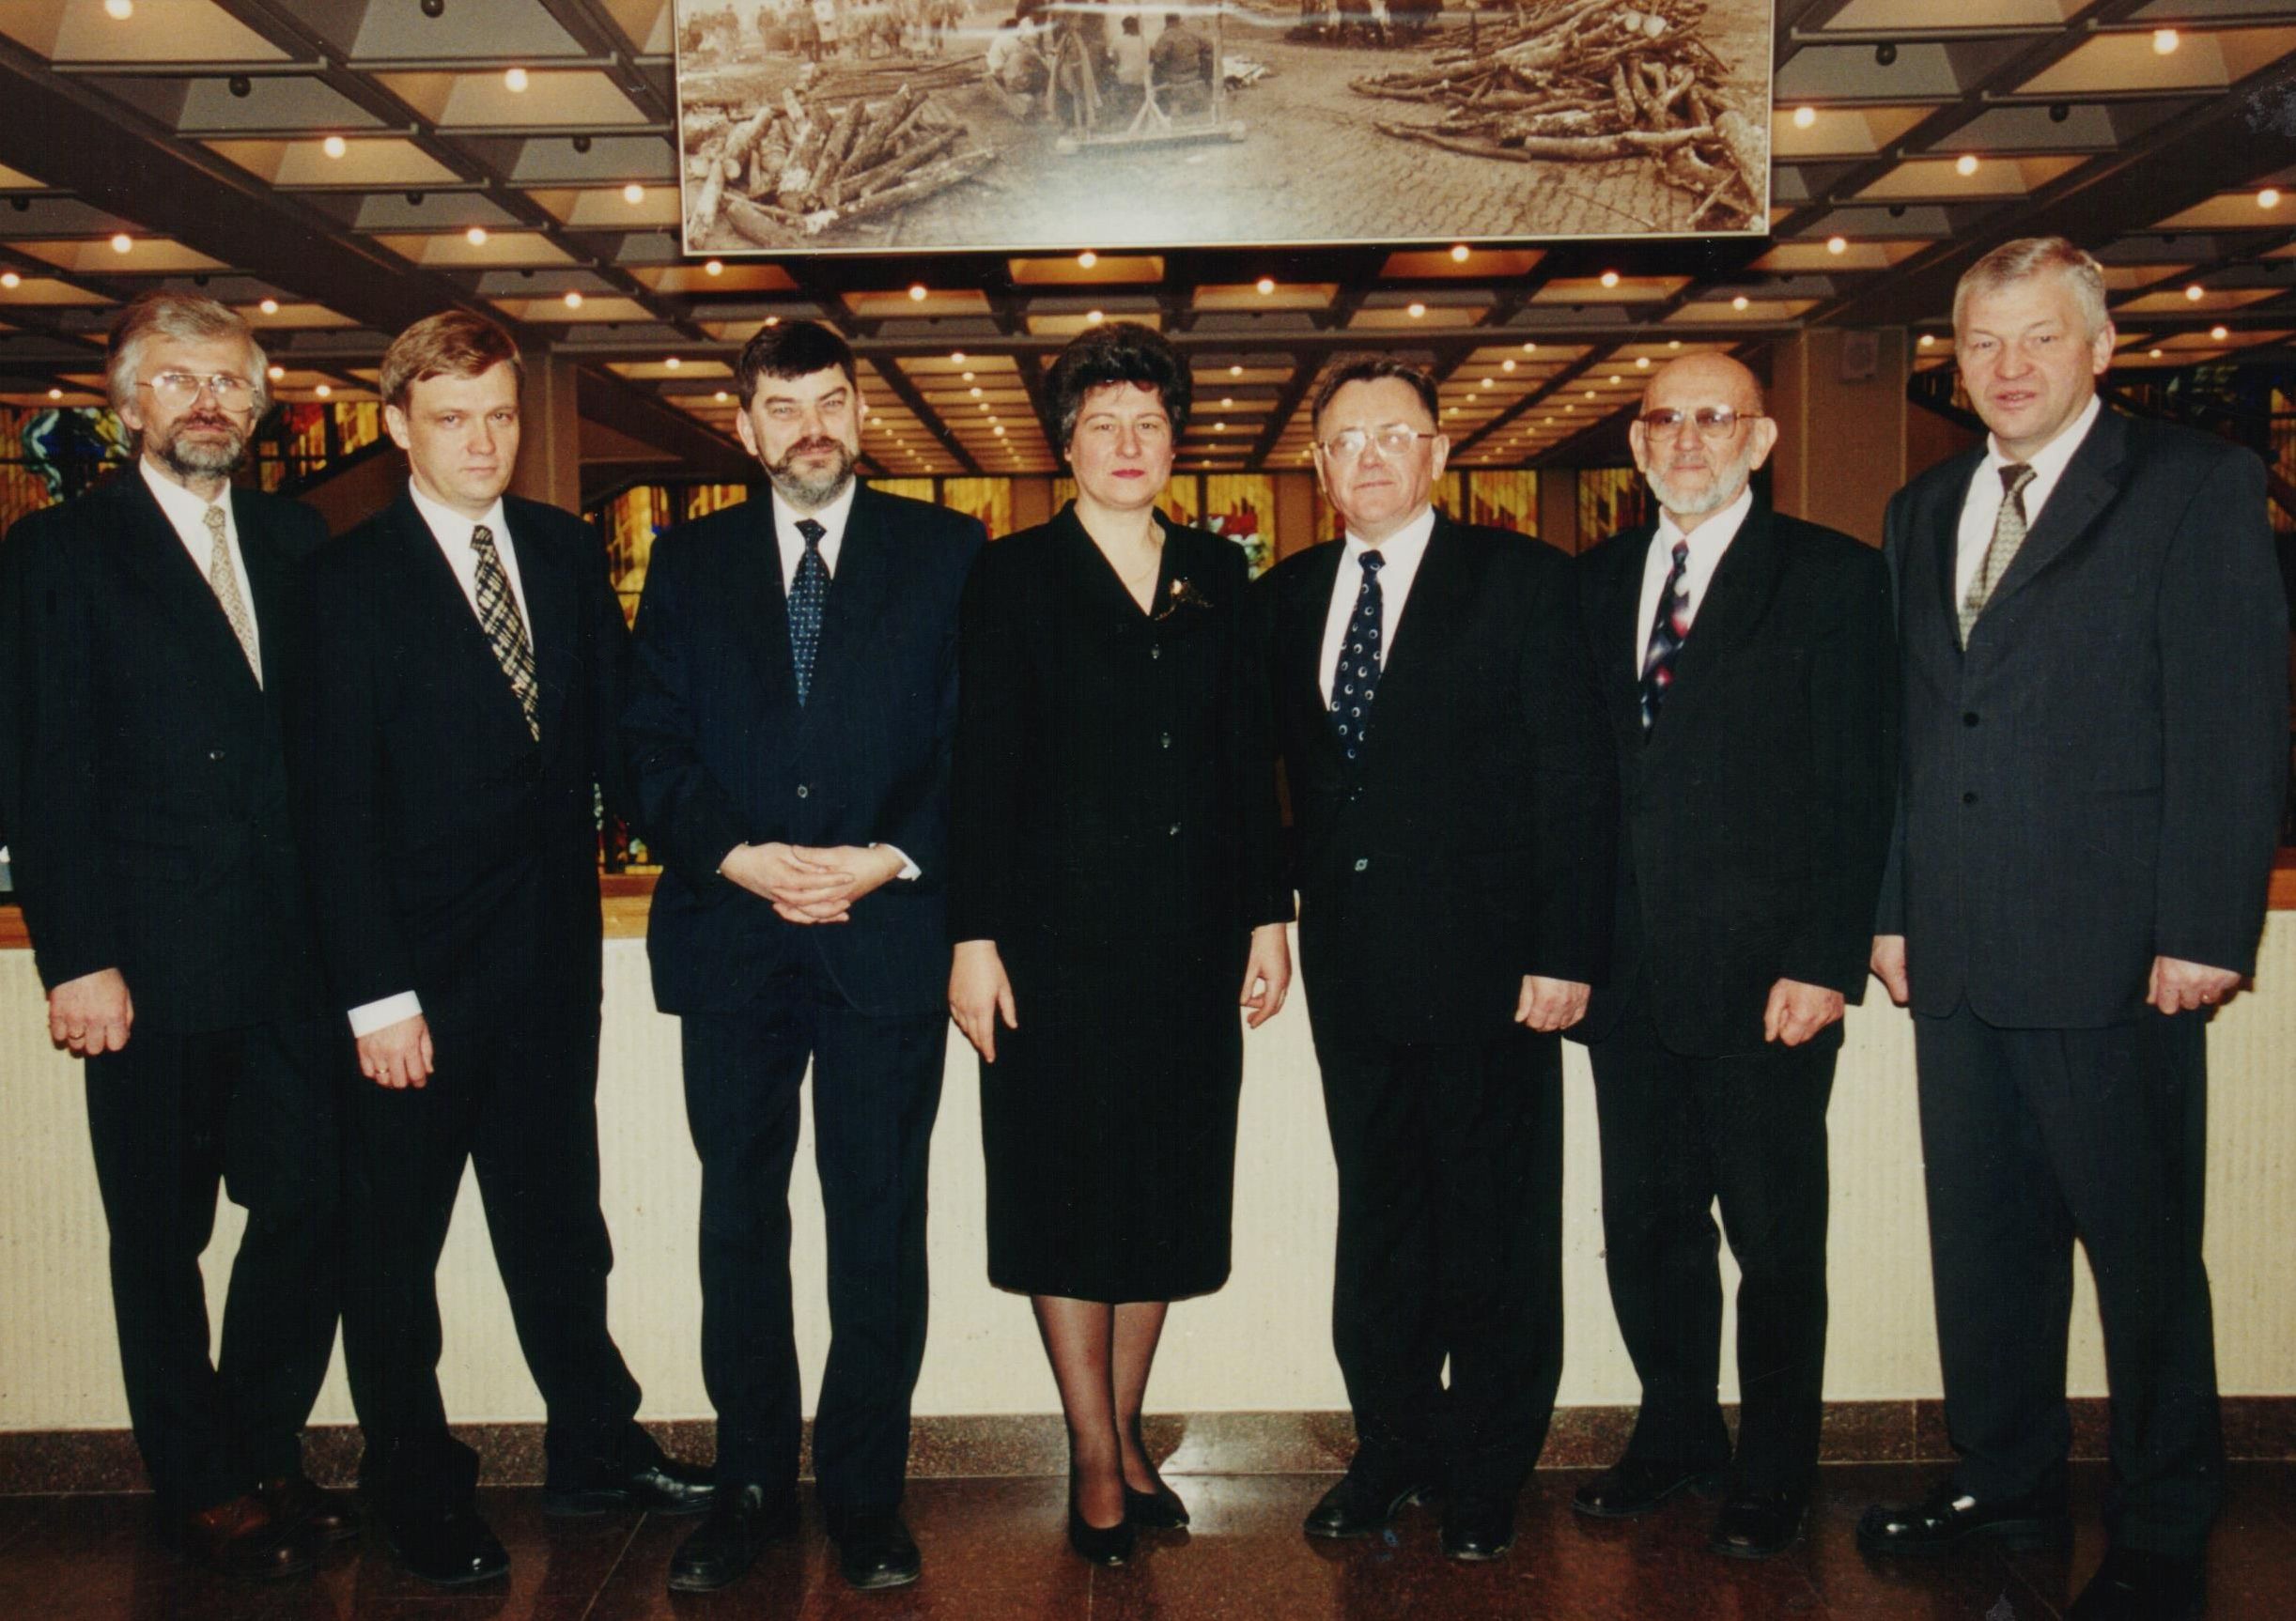 1990 m. kovo 11-osios Nepriklausomybės Akto signatarų klubo valdyba. Iš kairės: V. Kačinskas, Z. Vaišvila, E. Klumbys, B. Valionytė, A. Karoblis, G. Ilgūnas ir R. Rudzys. 2000 m. lapkričio 25 d.